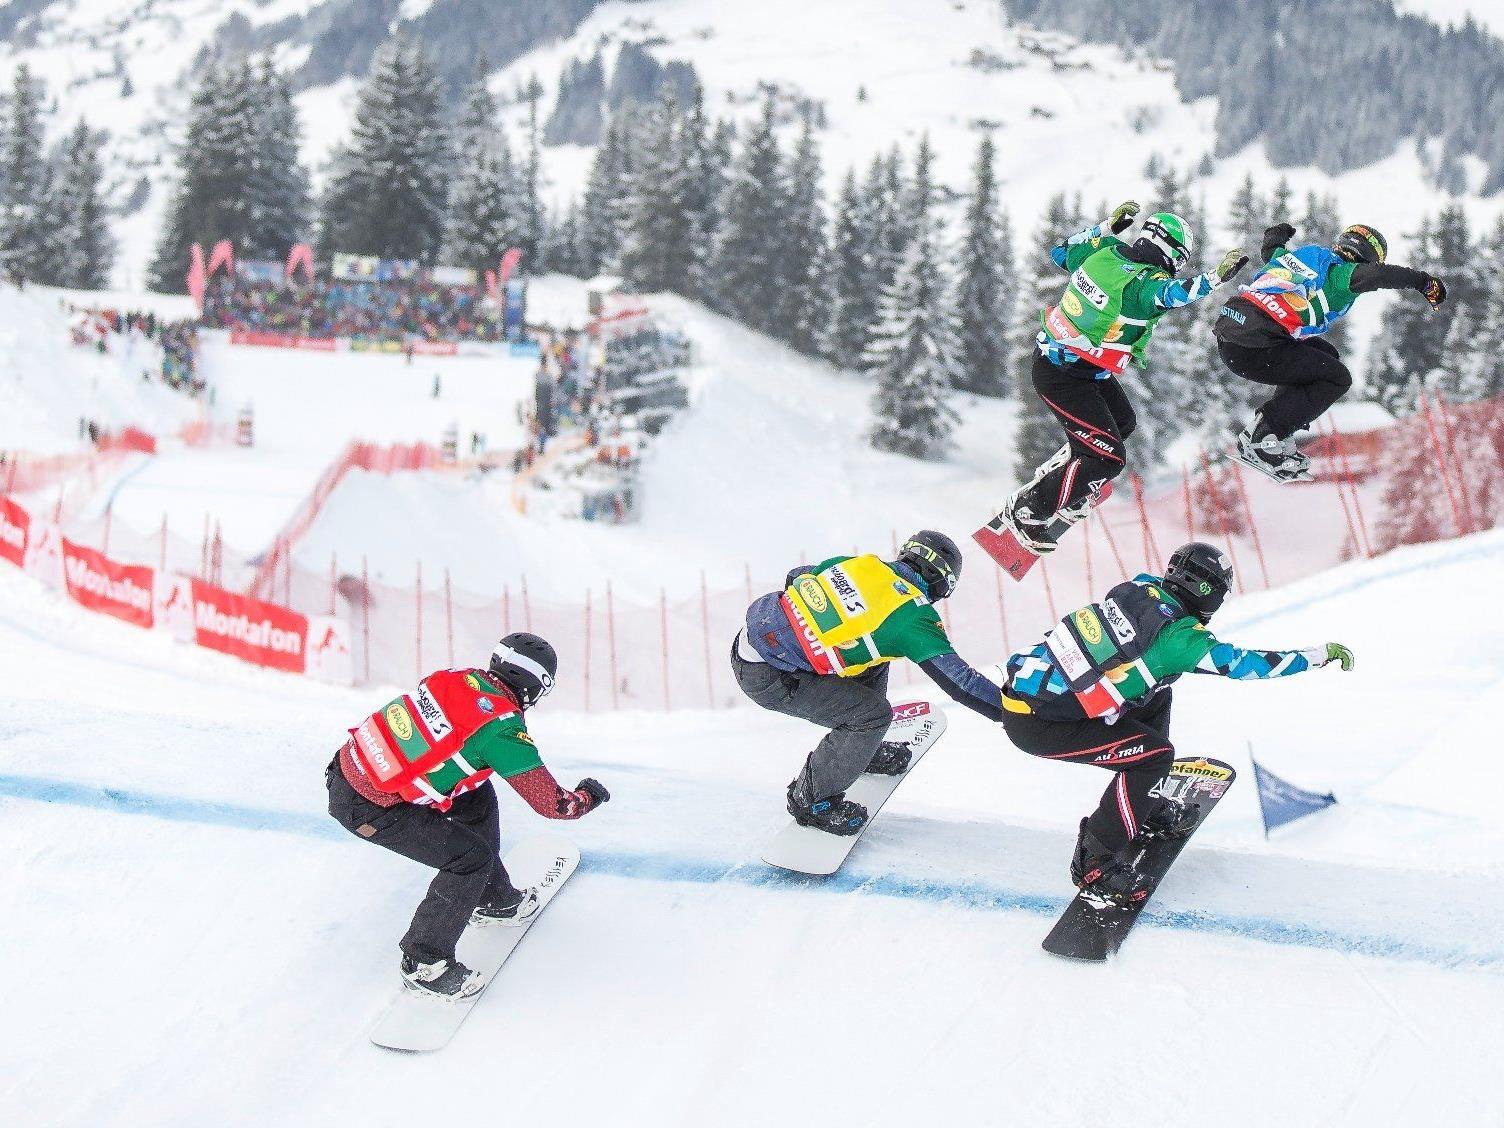 Bald beginnen die olympischen Jugendfestspiele in Vorarlberg und Liechtenstein.